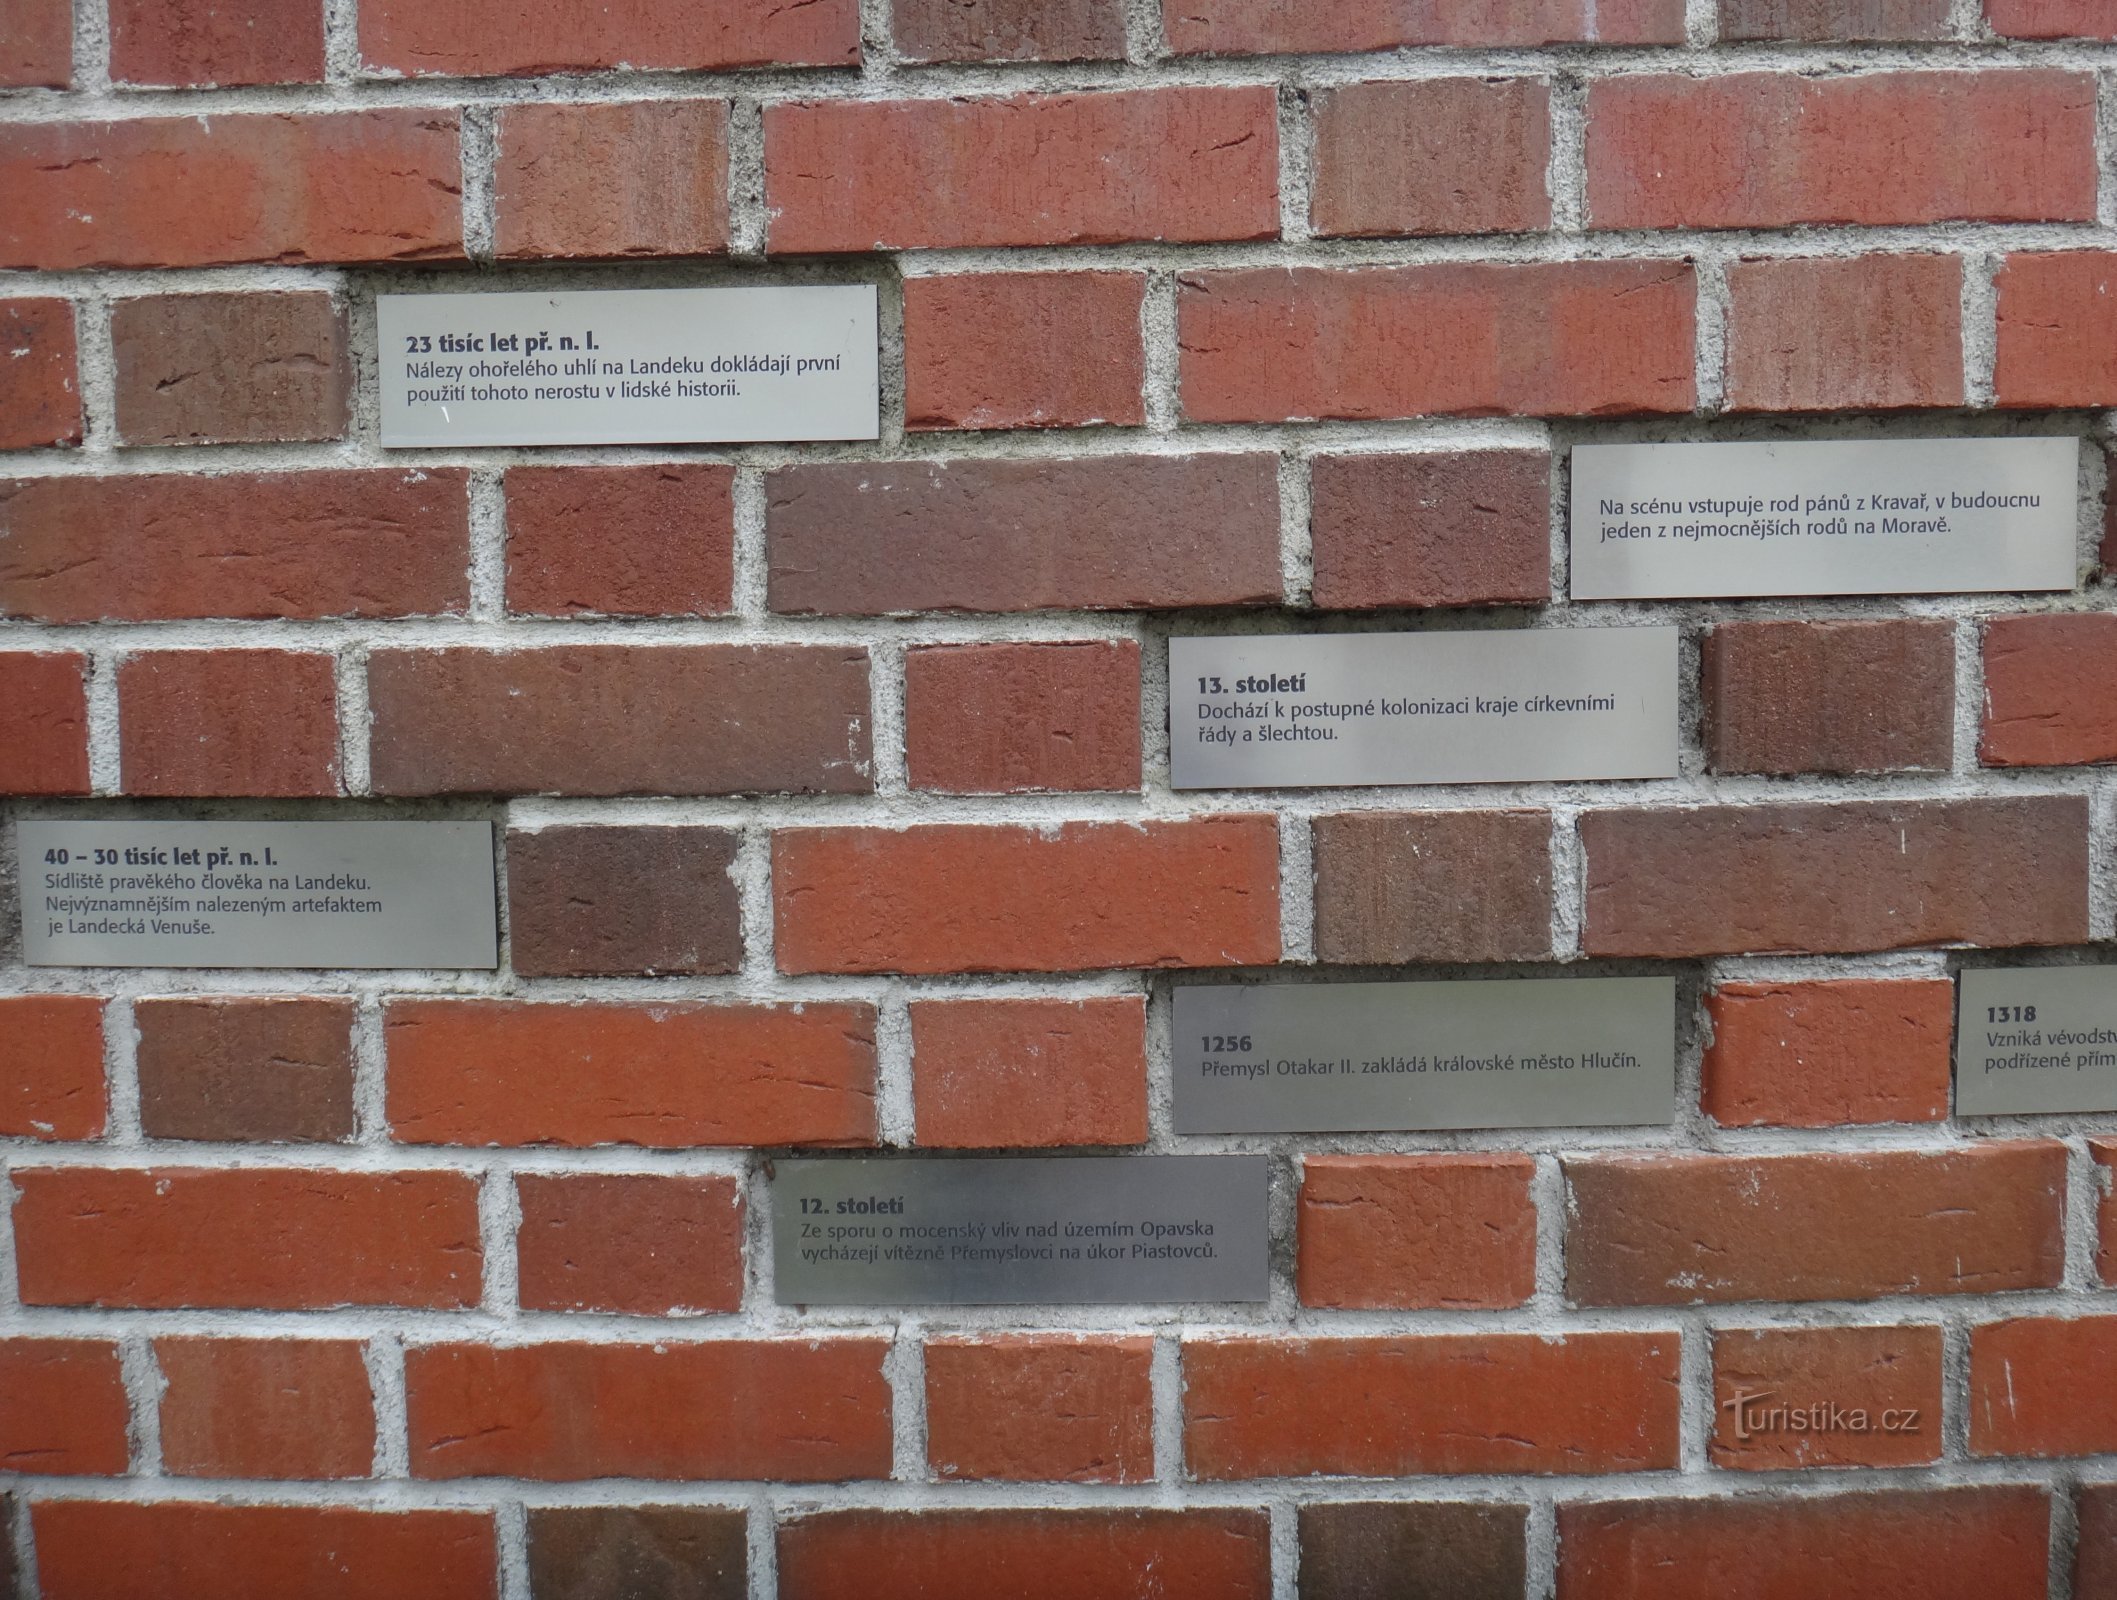 Hlúčín - bức tường về lịch sử